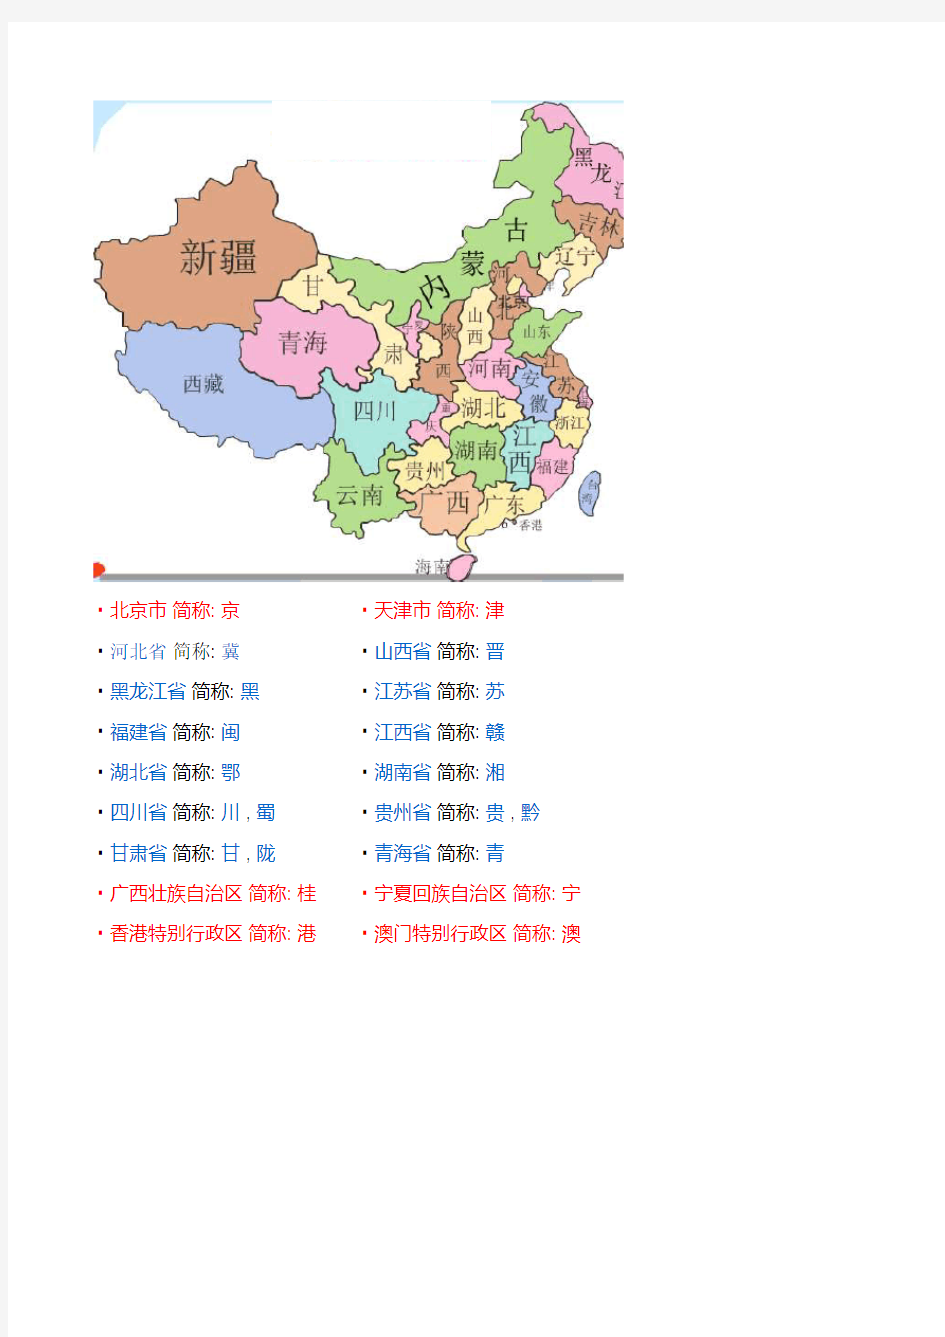 中国省份地图及简称